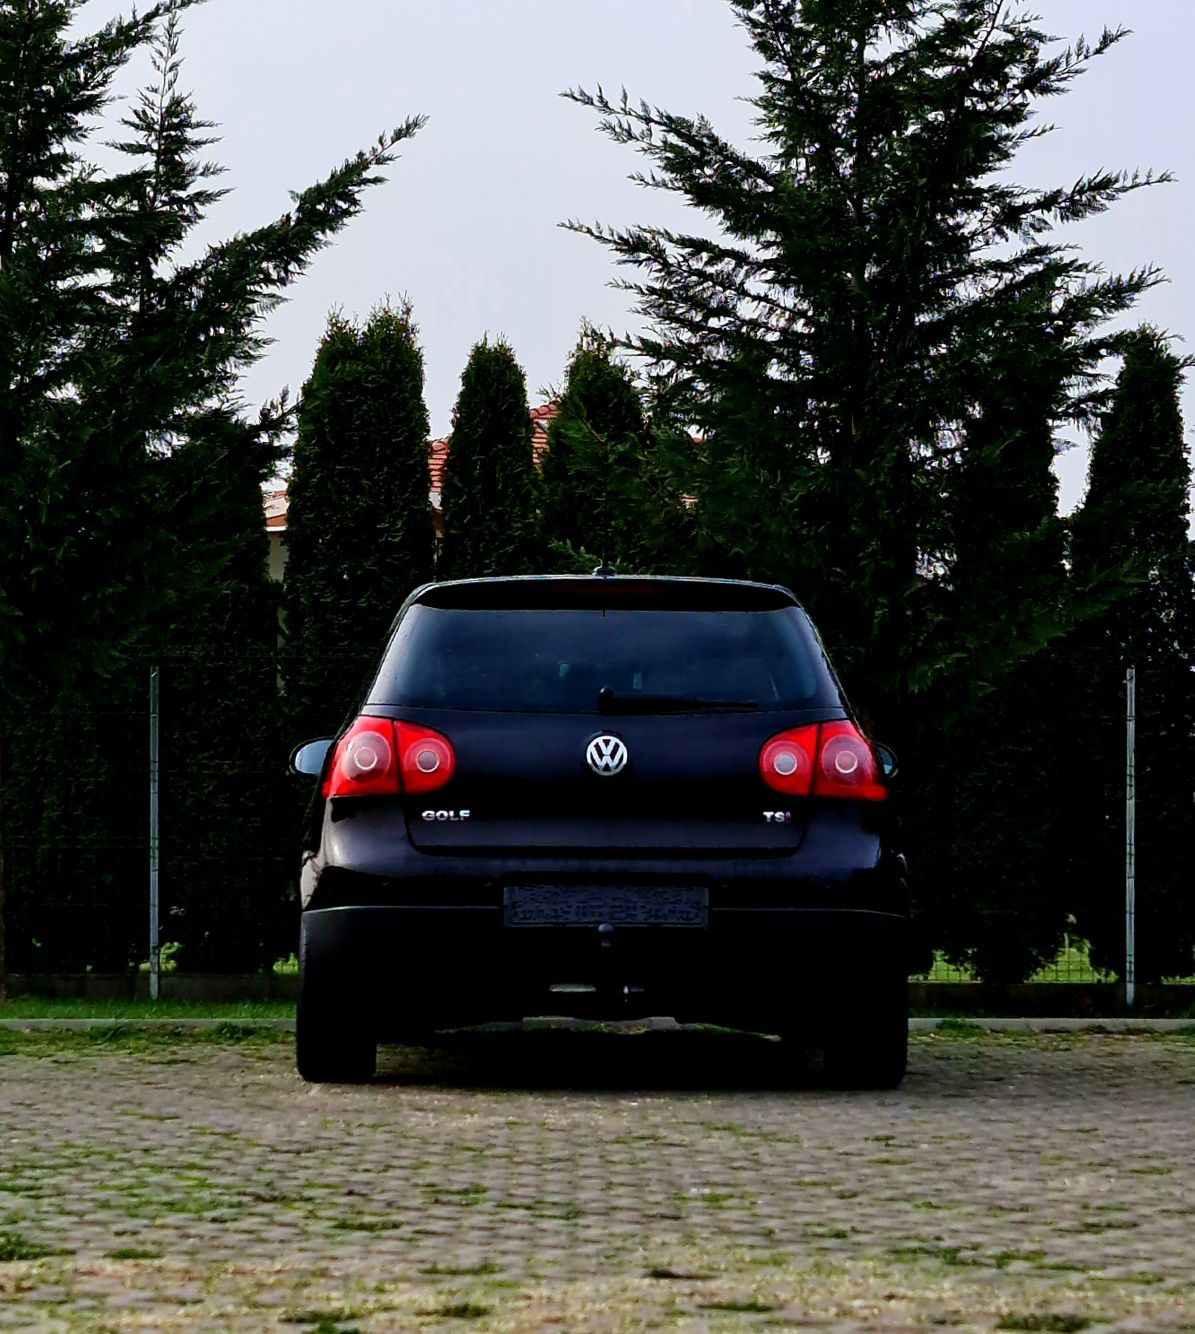 Volkswagen Golf negru,1.4 benzina,122cp,2009,recent adus din Germania